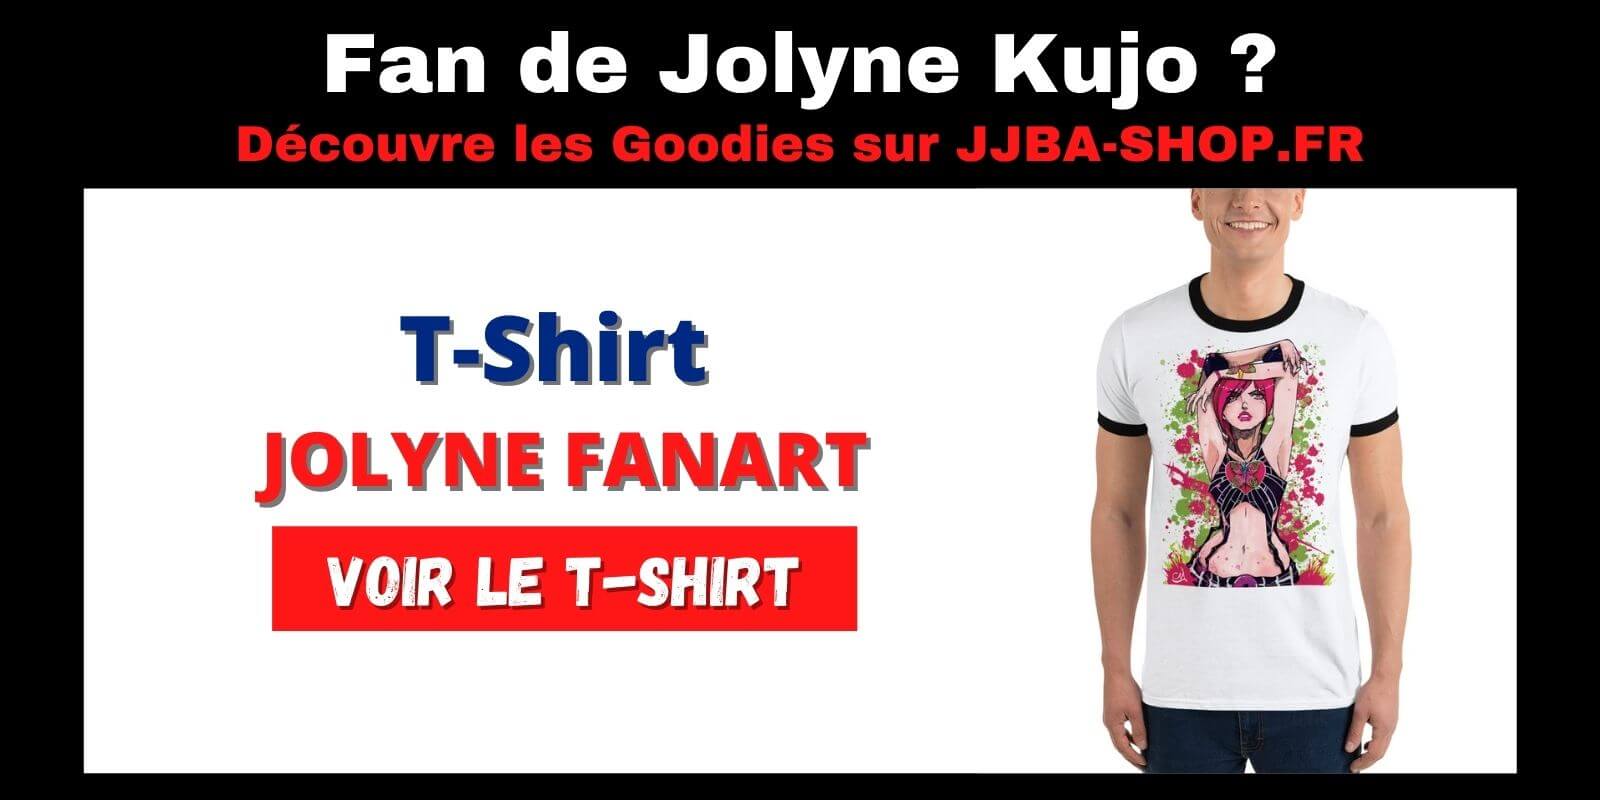 t-shirt jolyne kujo cujoh fanart JoJo Bizarre Adventure jjba shop